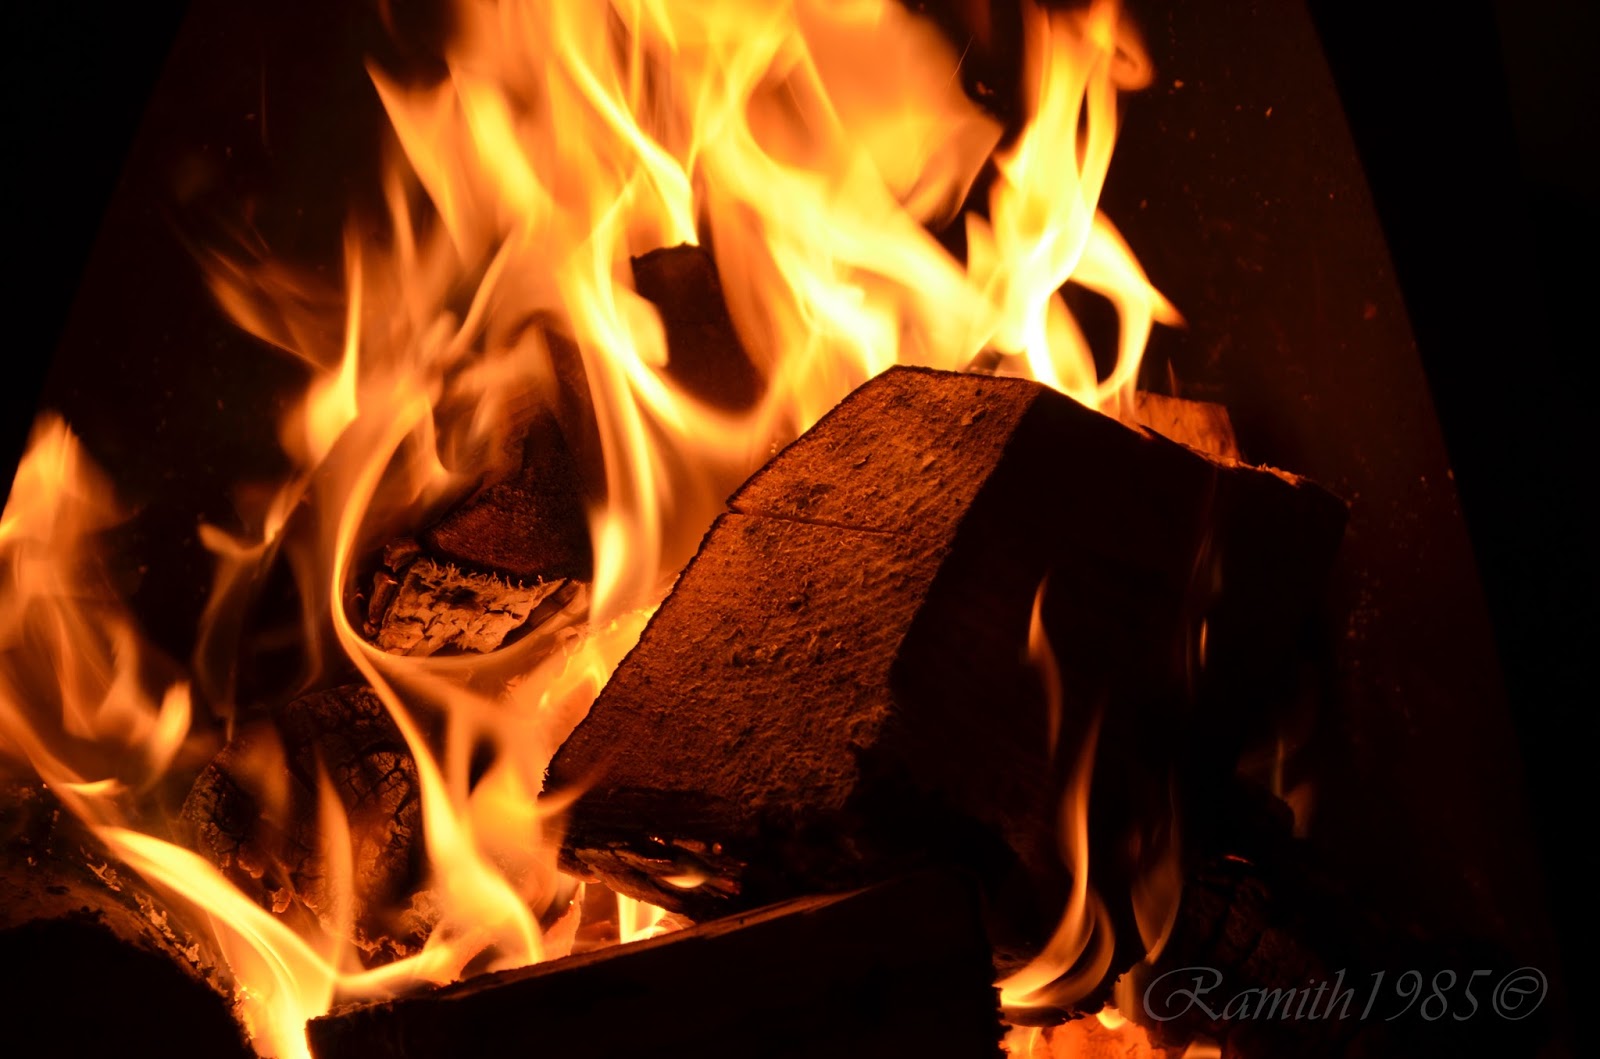 Photo Spear: Burning wood